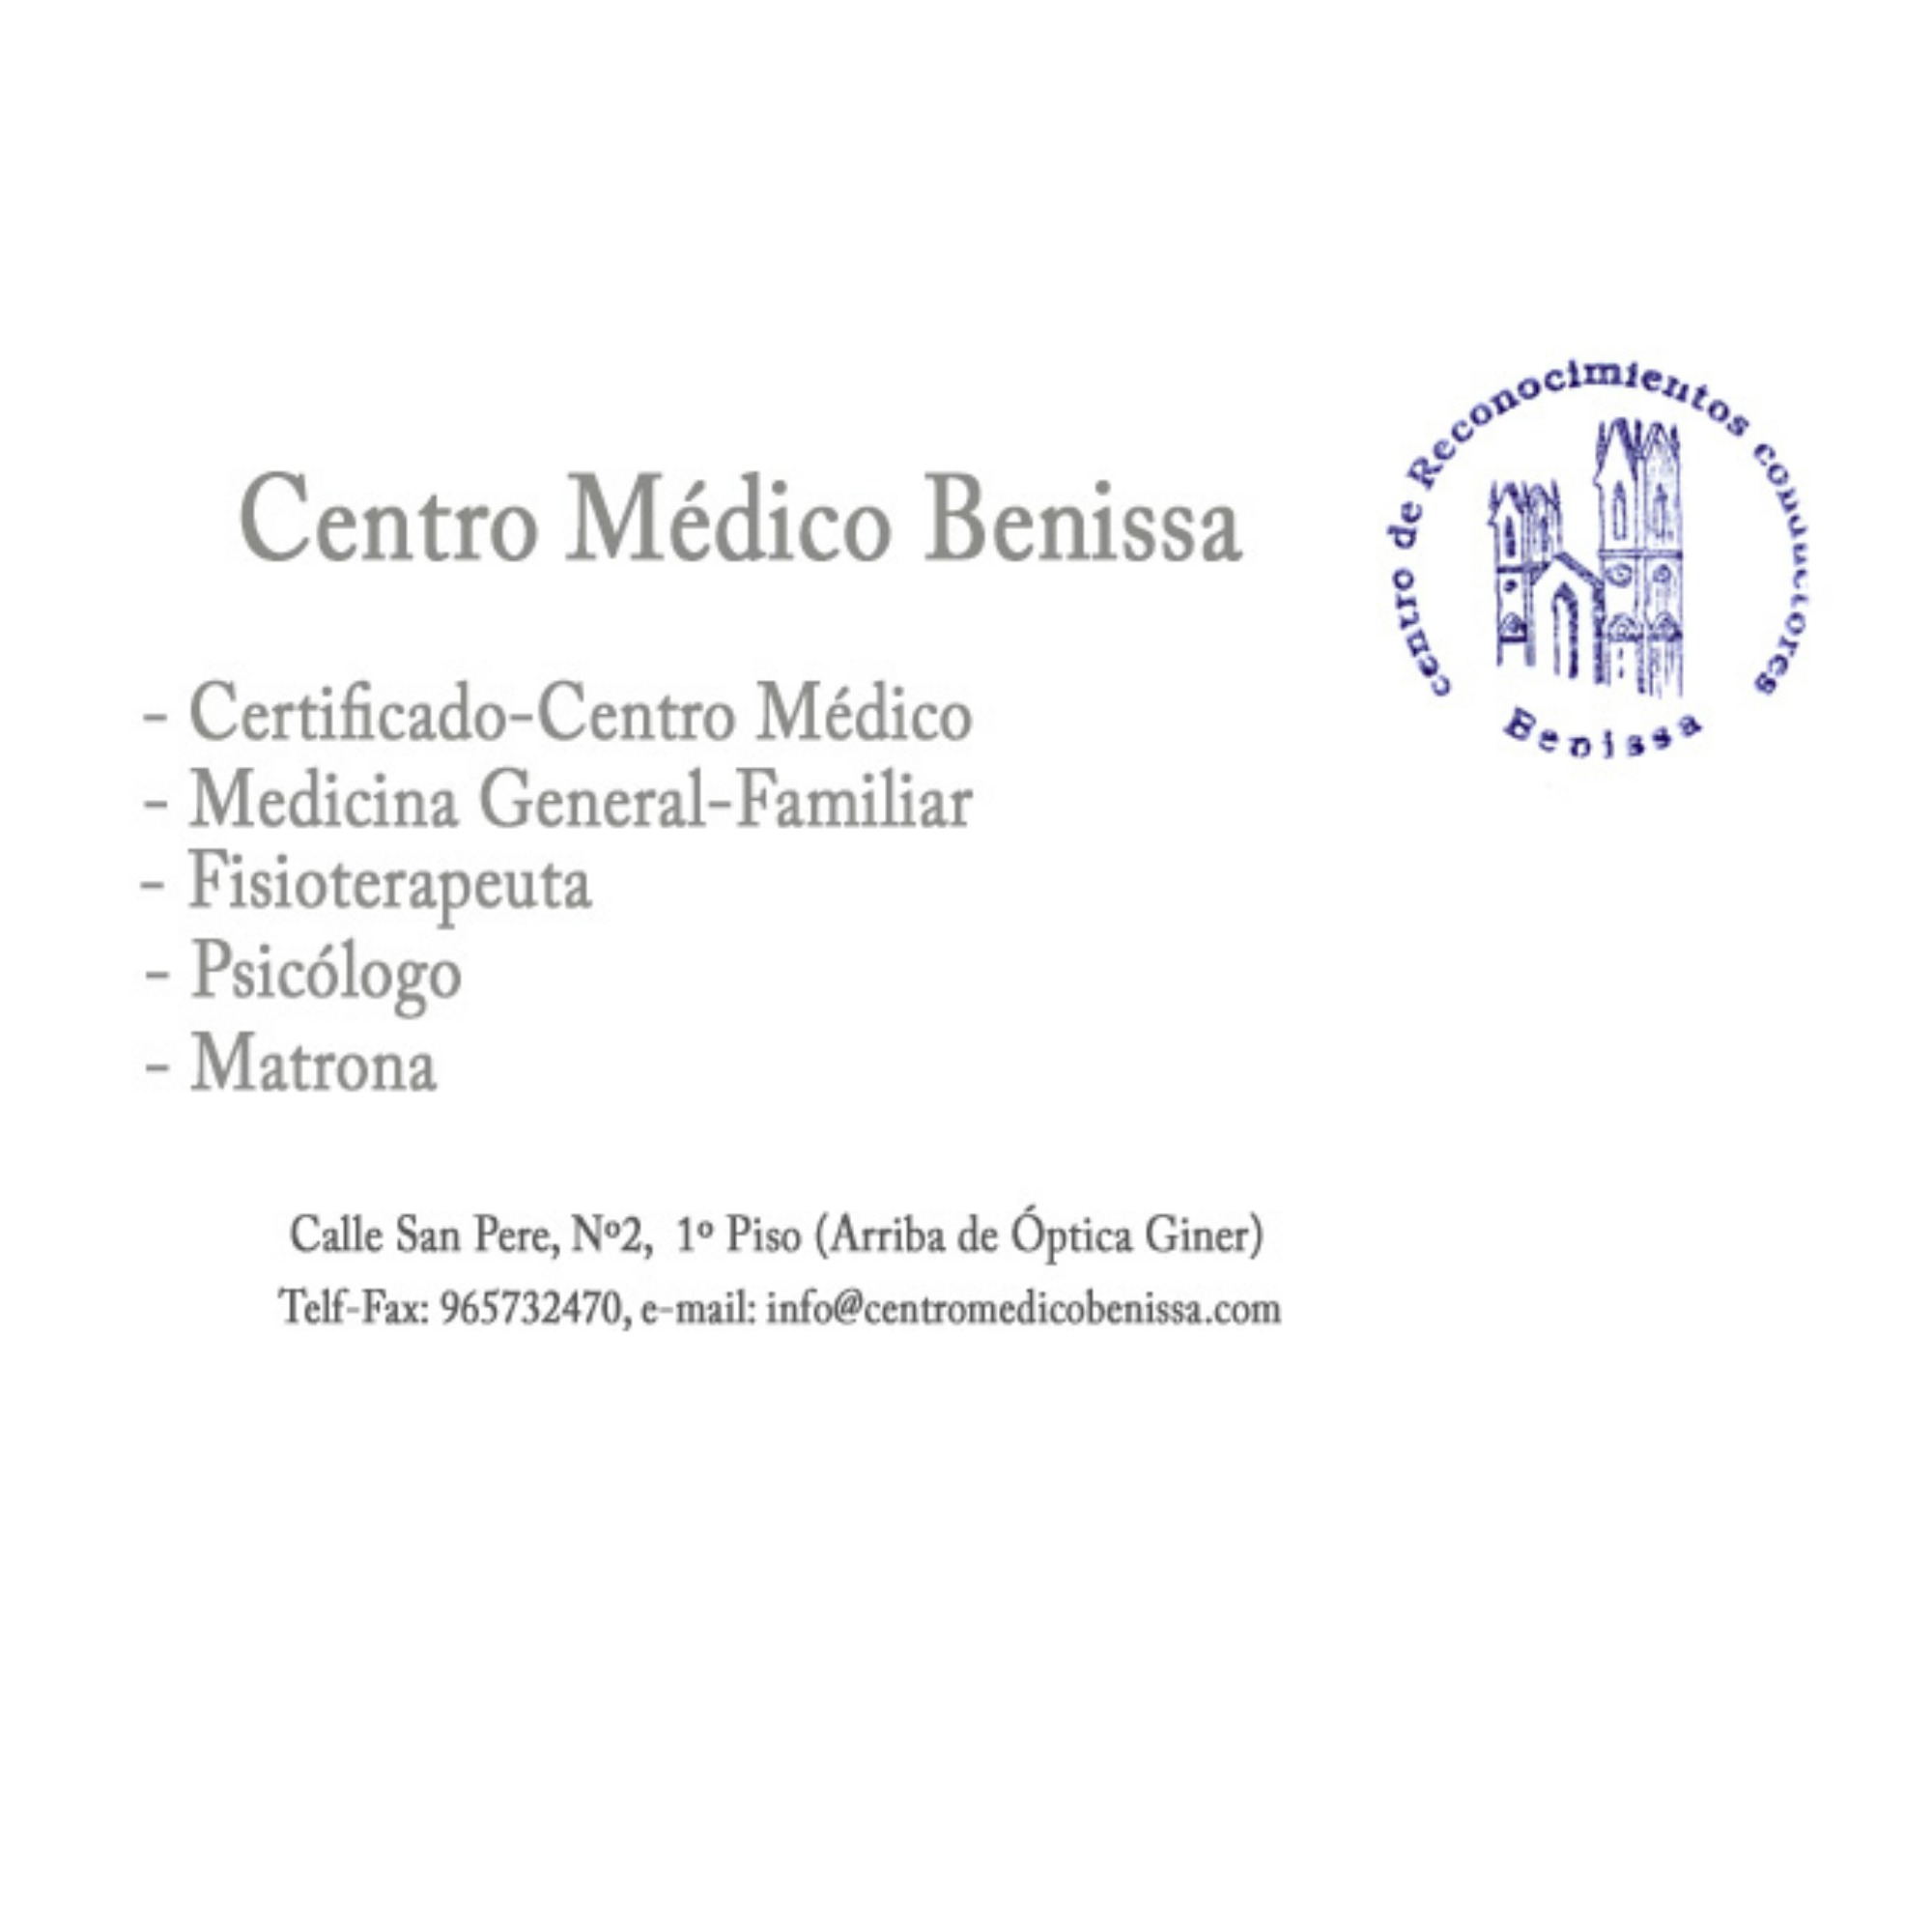 Centro Médico Benissa